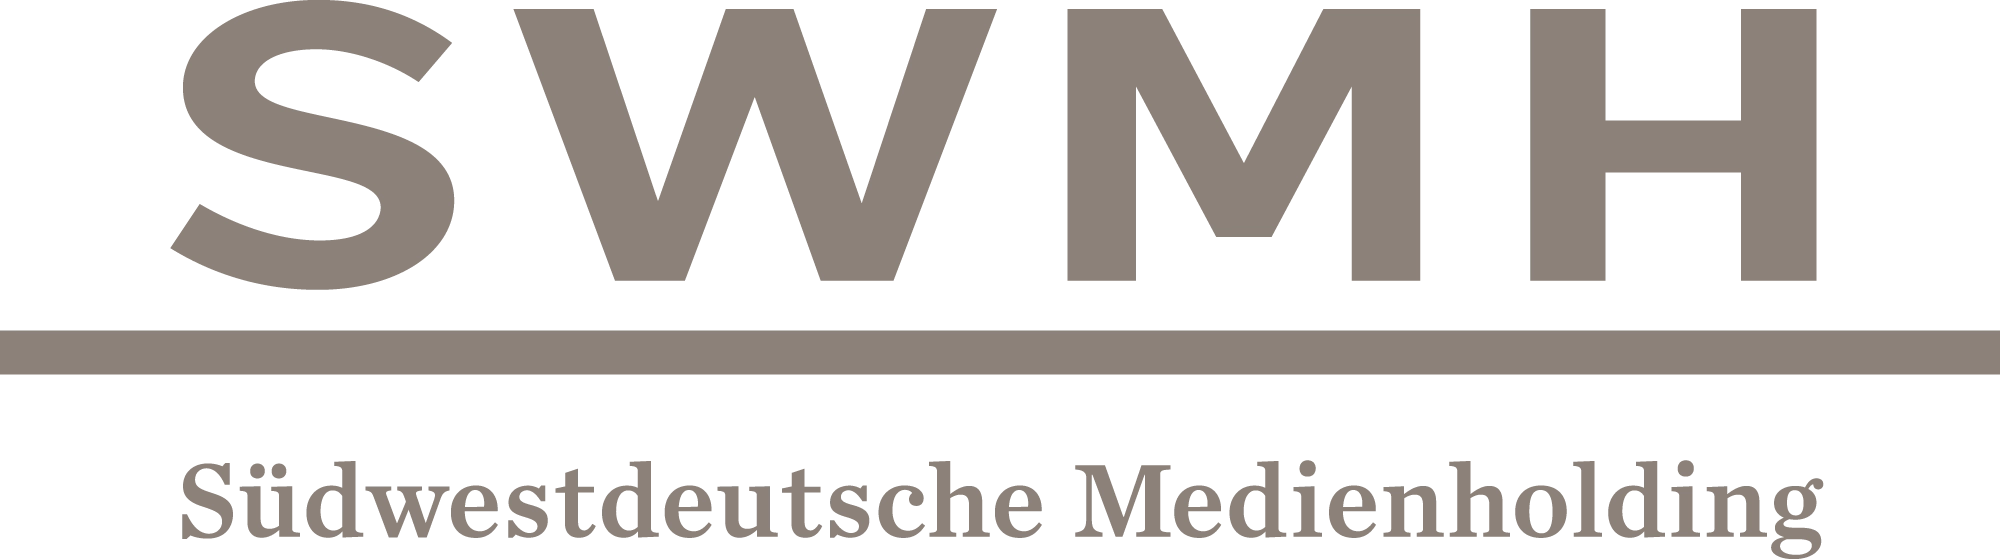 SWMH Südwestdeutsche Medienholding